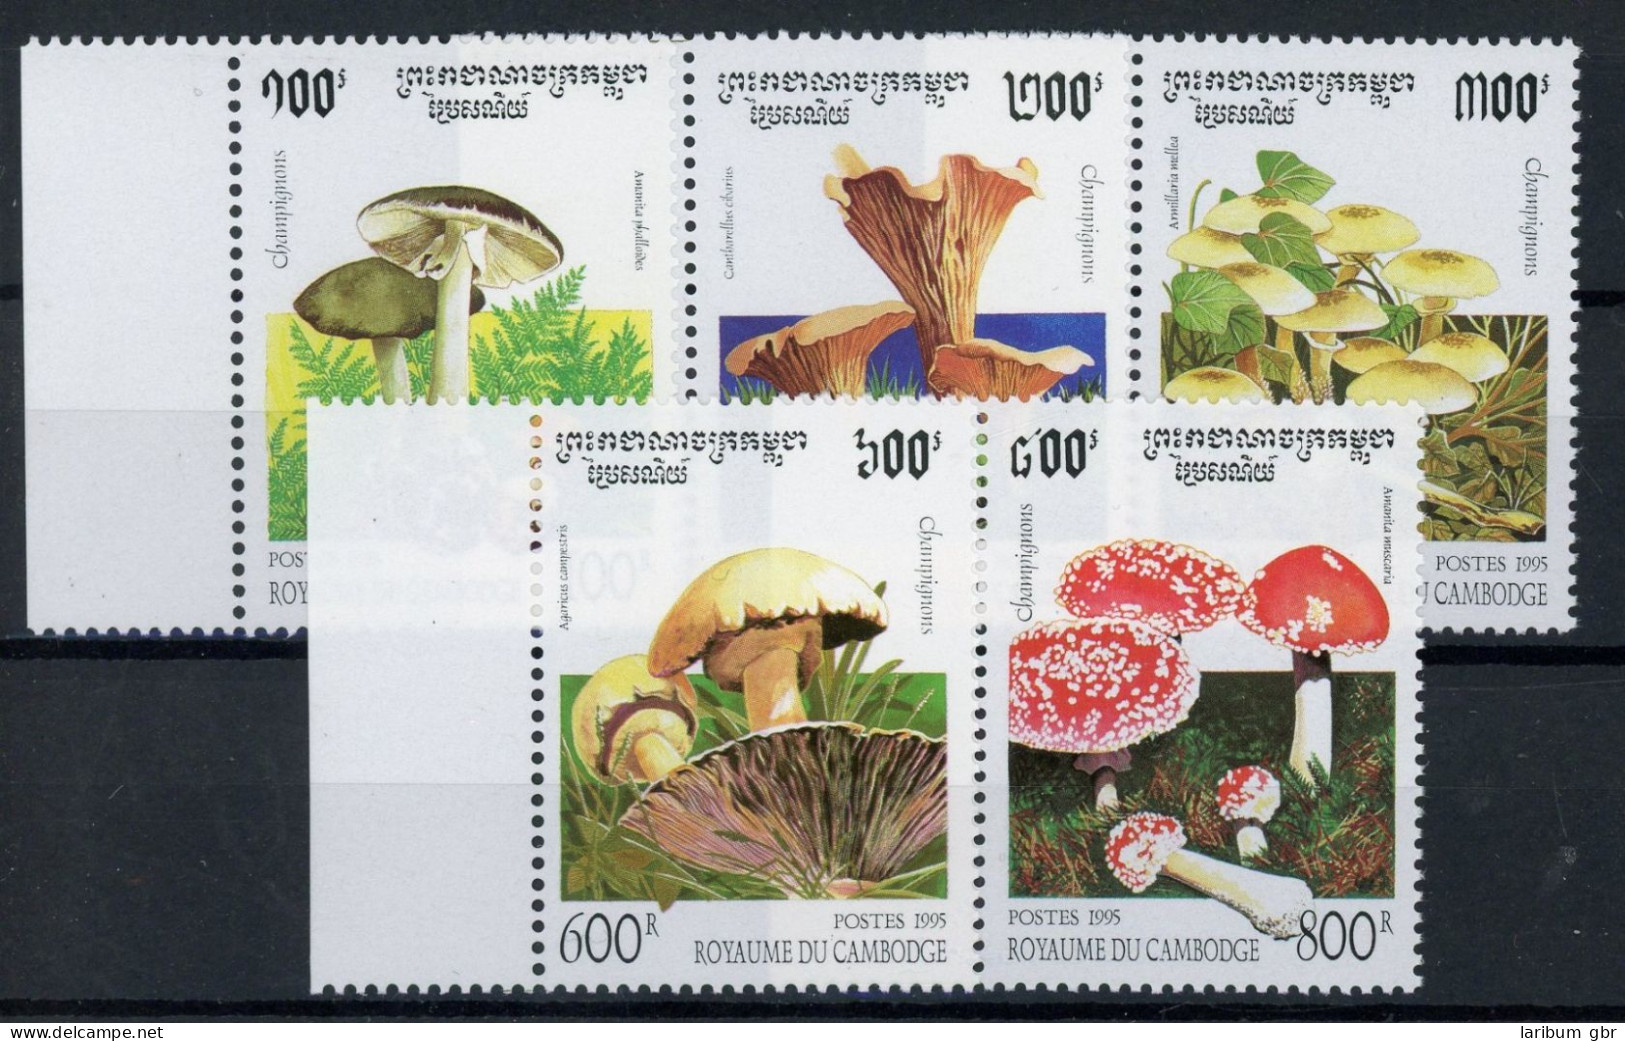 Kambodscha 1503-1507 Postfrisch Pilze #JQ865 - Cambodia